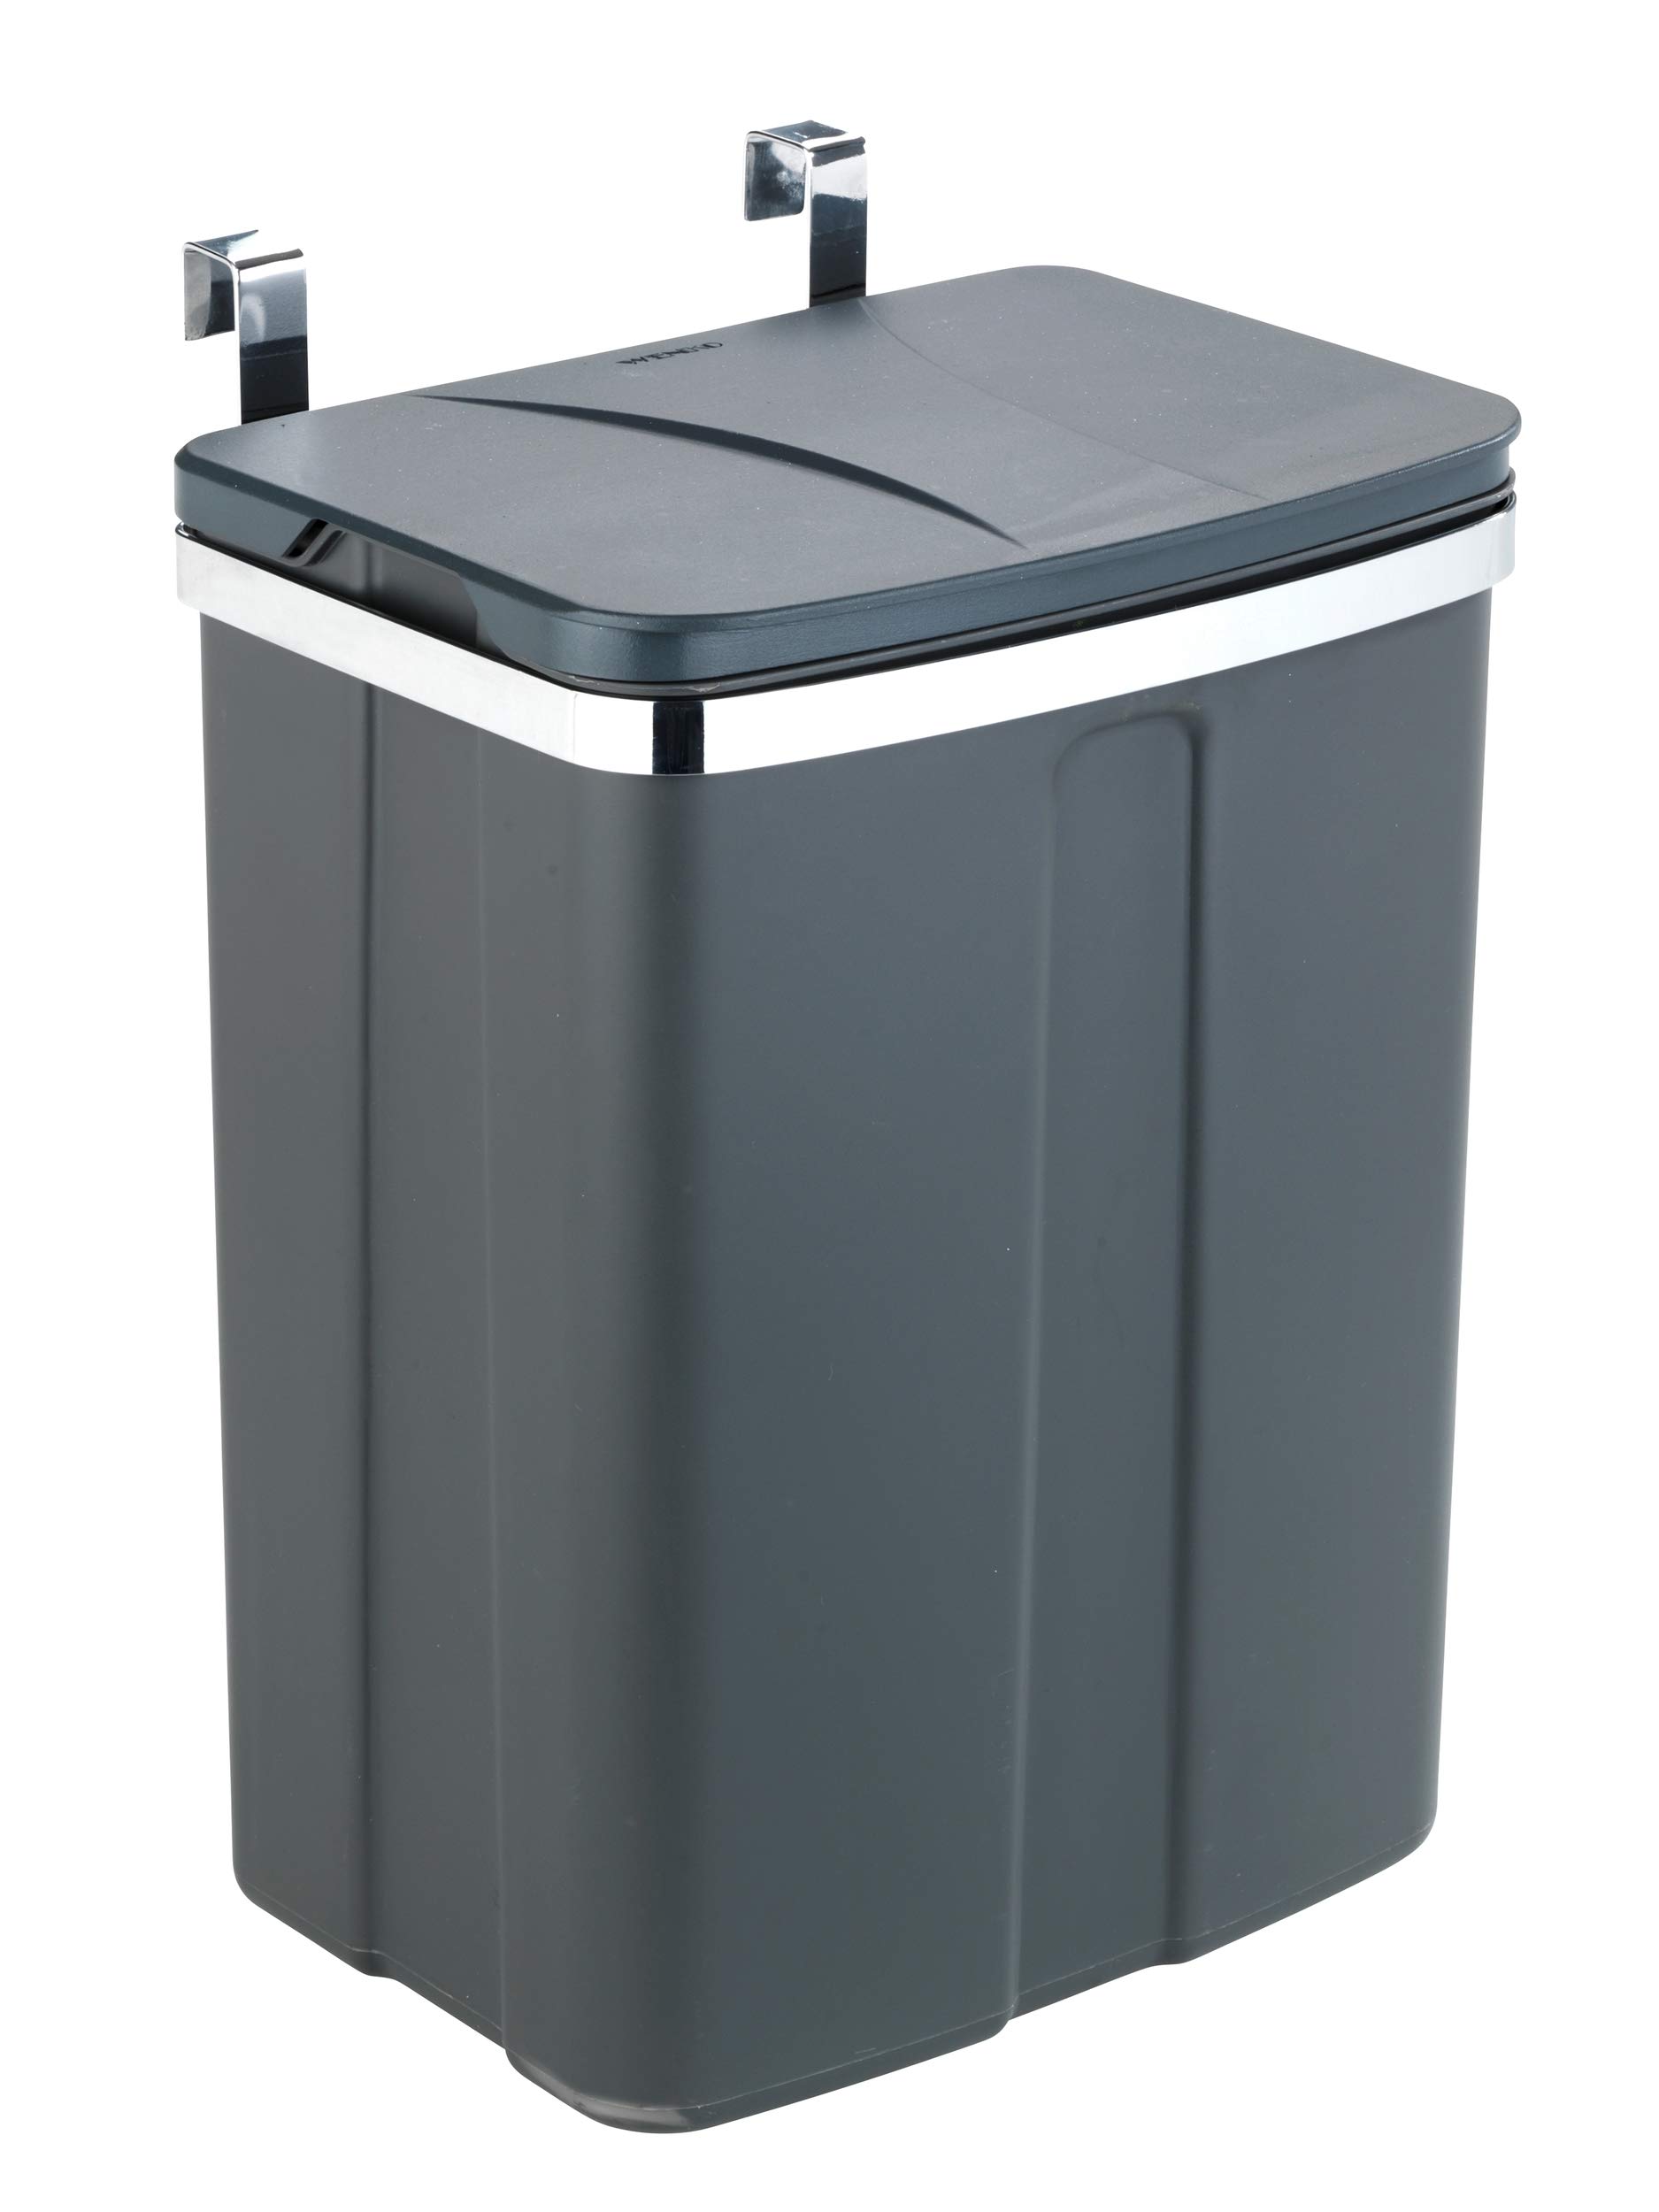 WENKO Tür-Abfalleimer, Mülleimer zum Einhängen an Schubladen- und Schranktüren, geeignet für Badezimmer und Küche, ohne Bohren, aus Kunststoff und Stahl, Füllmenge 12 l, 26 x 21,5 x 37 cm, Grau